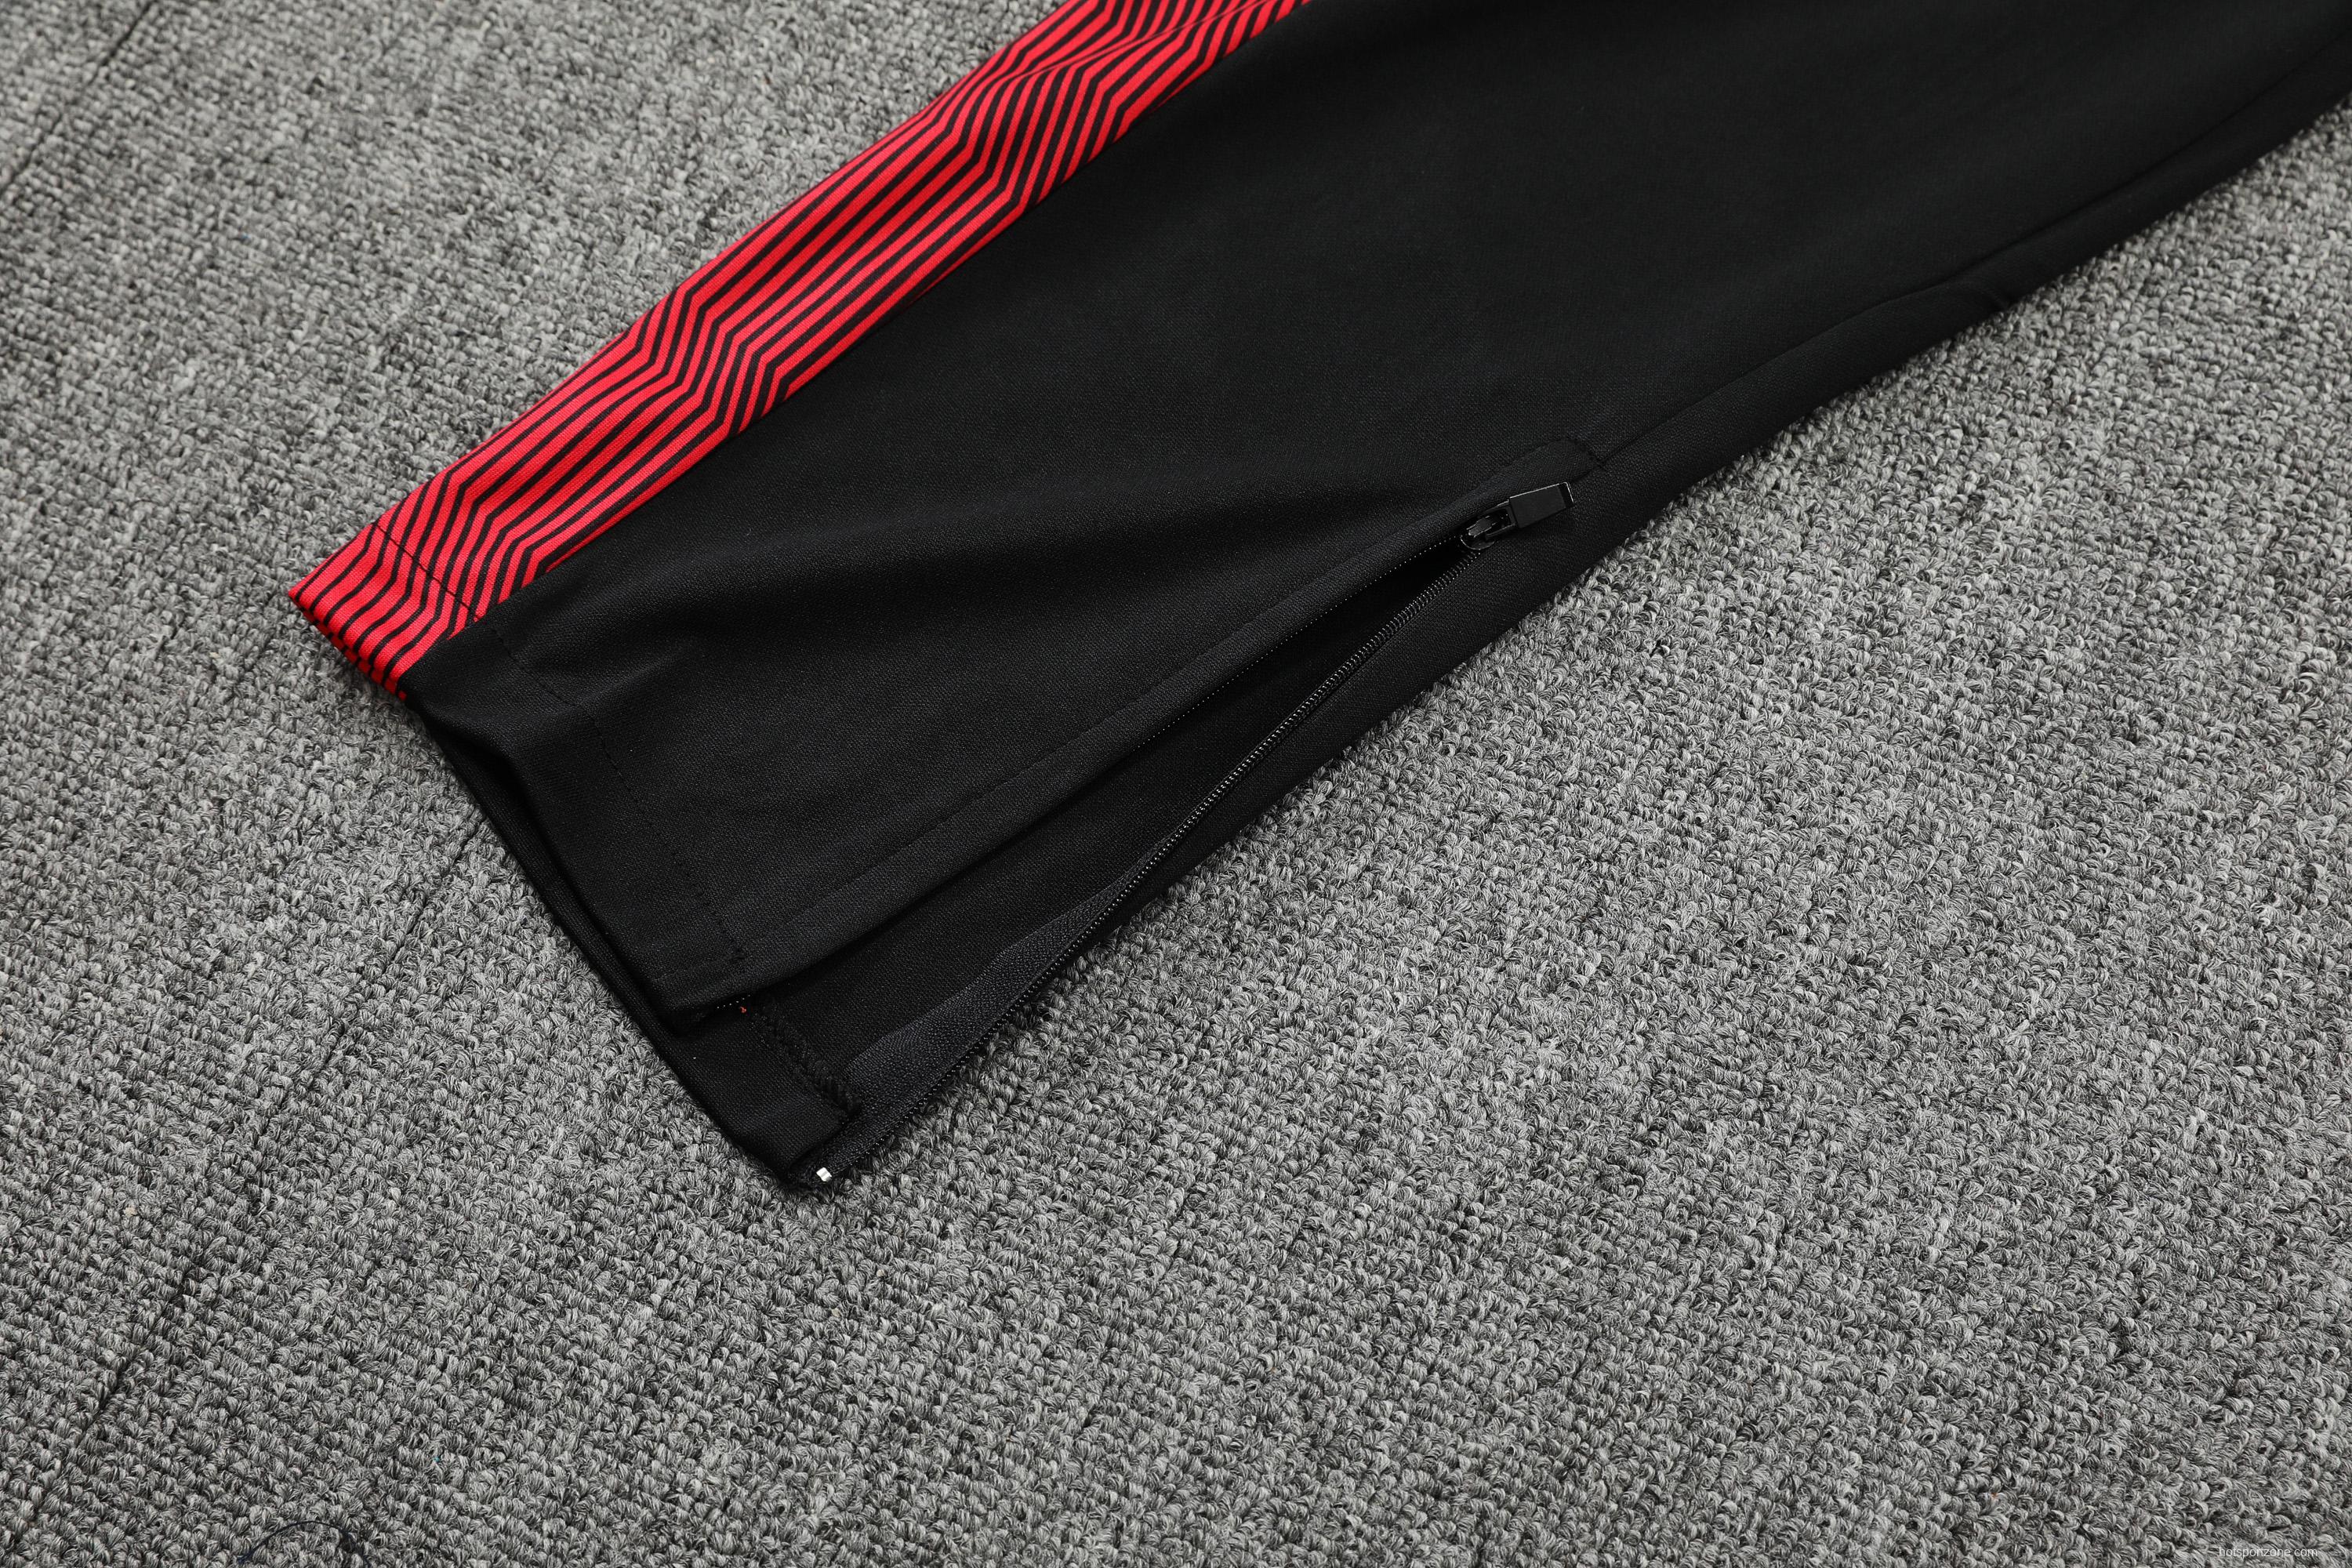 AC Milan POLO kit black (not sold separately)